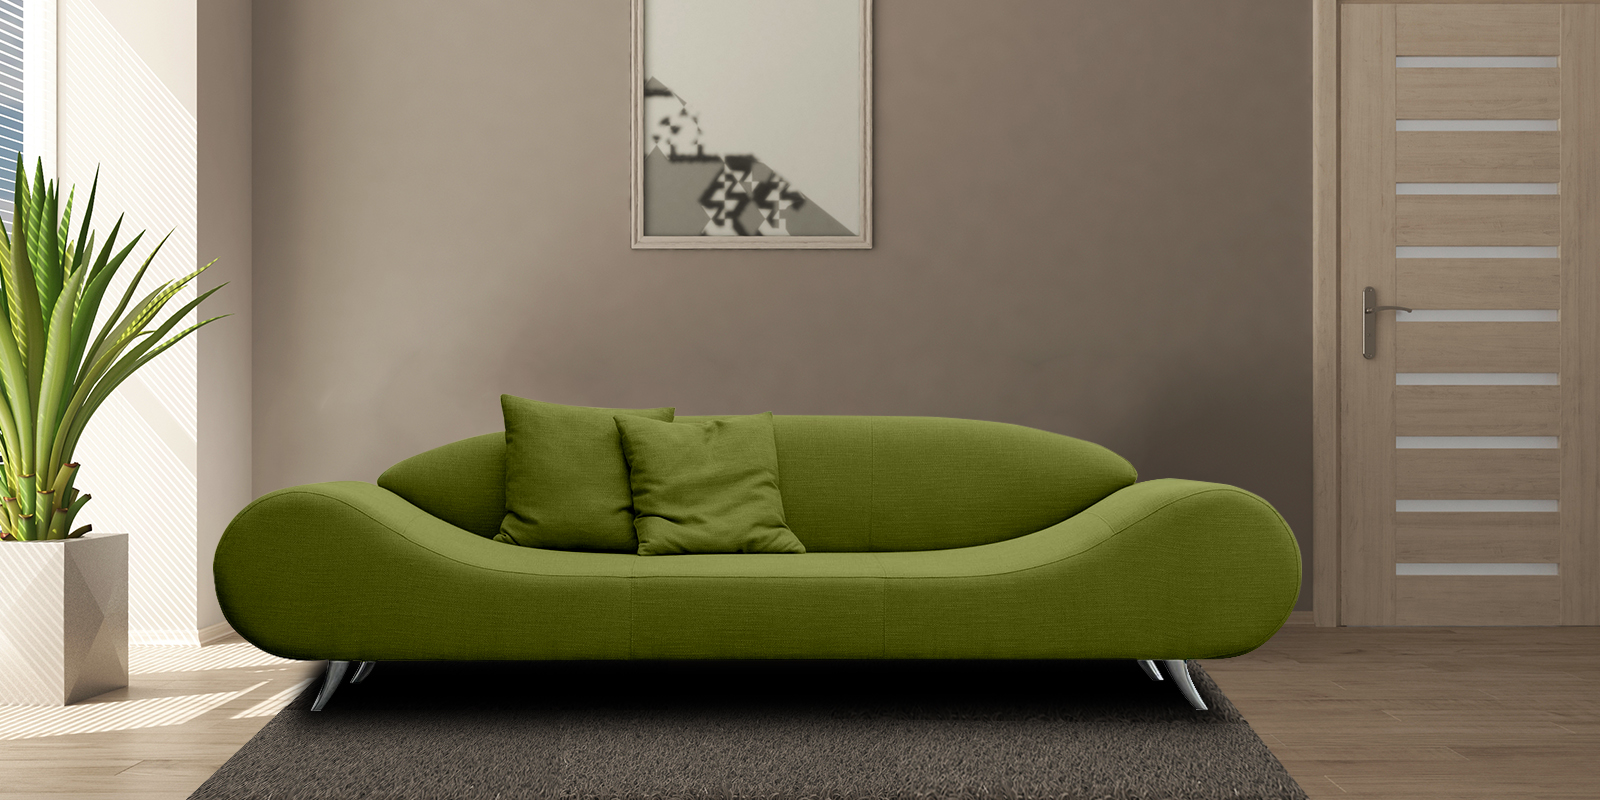 Astonishing Fabric 3 Seater Sofa In